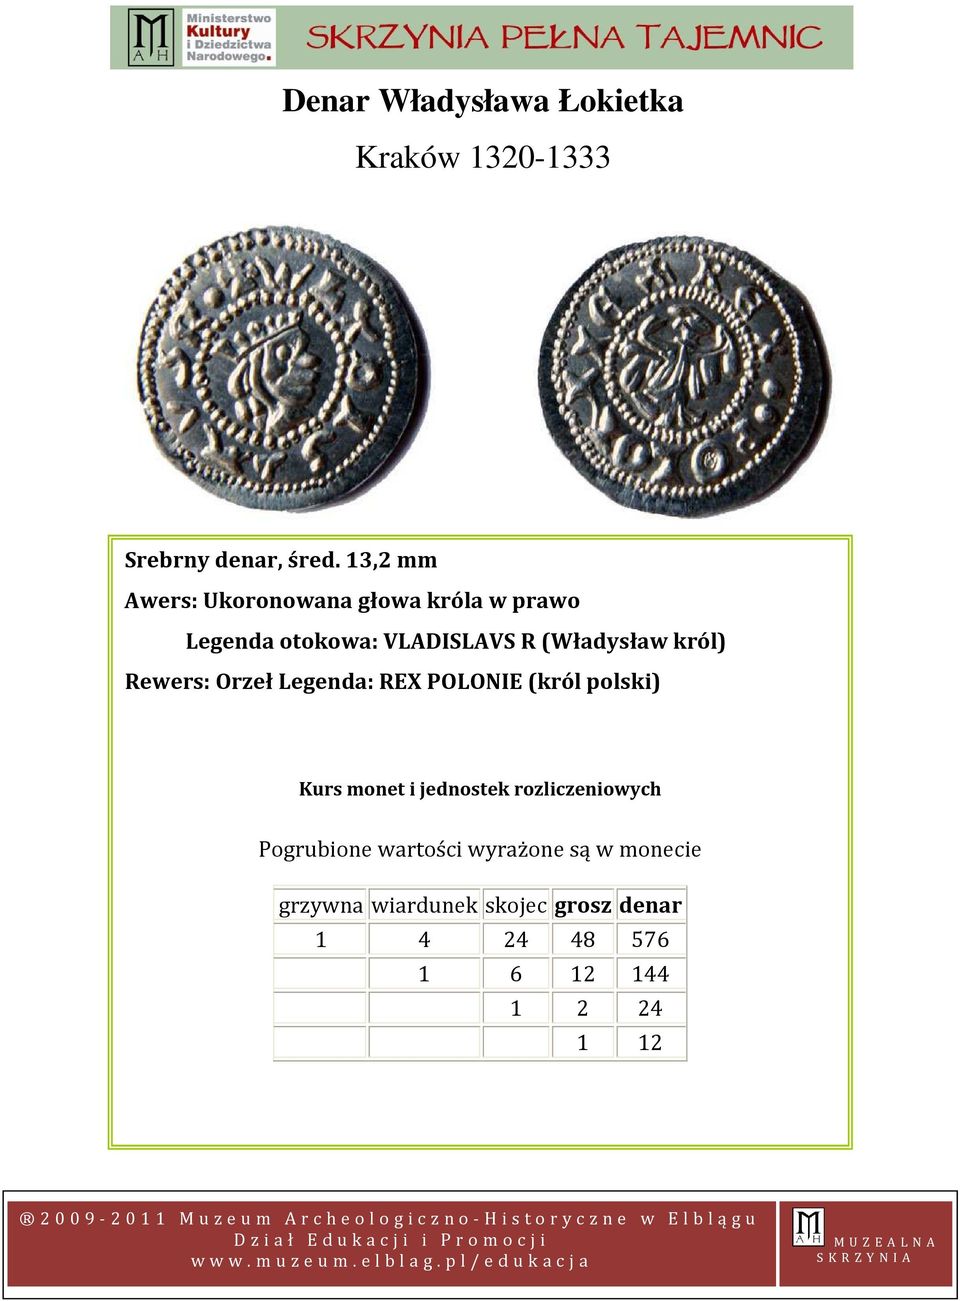 król) Rewers: Orzeł Legenda: REX POLONIE (król polski) Kurs monet i jednostek